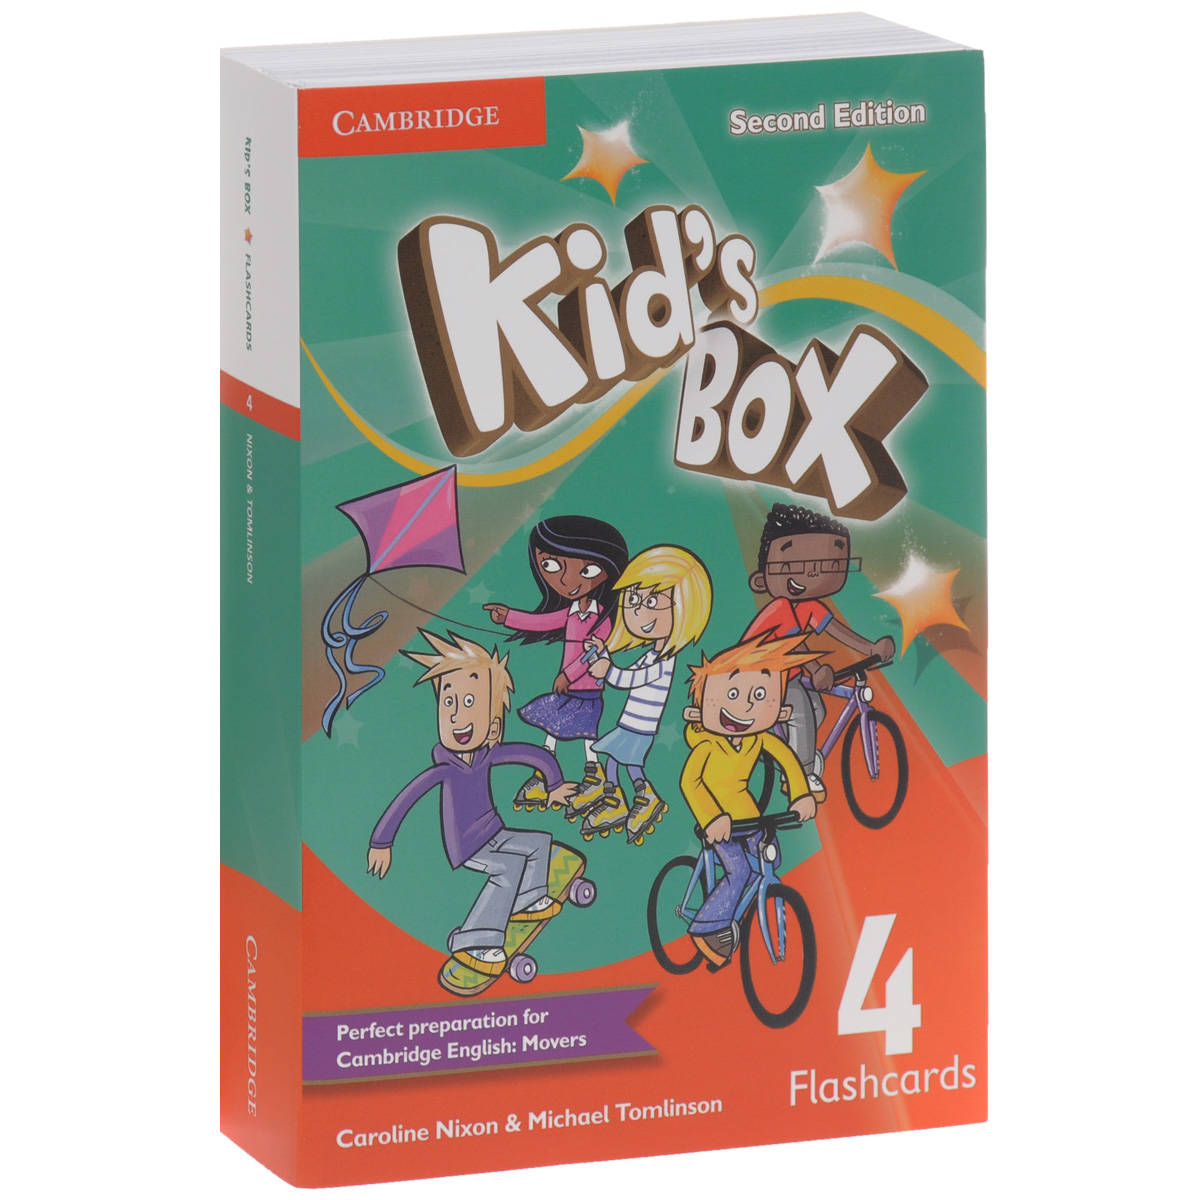 Kid's Box 4: Flashcards